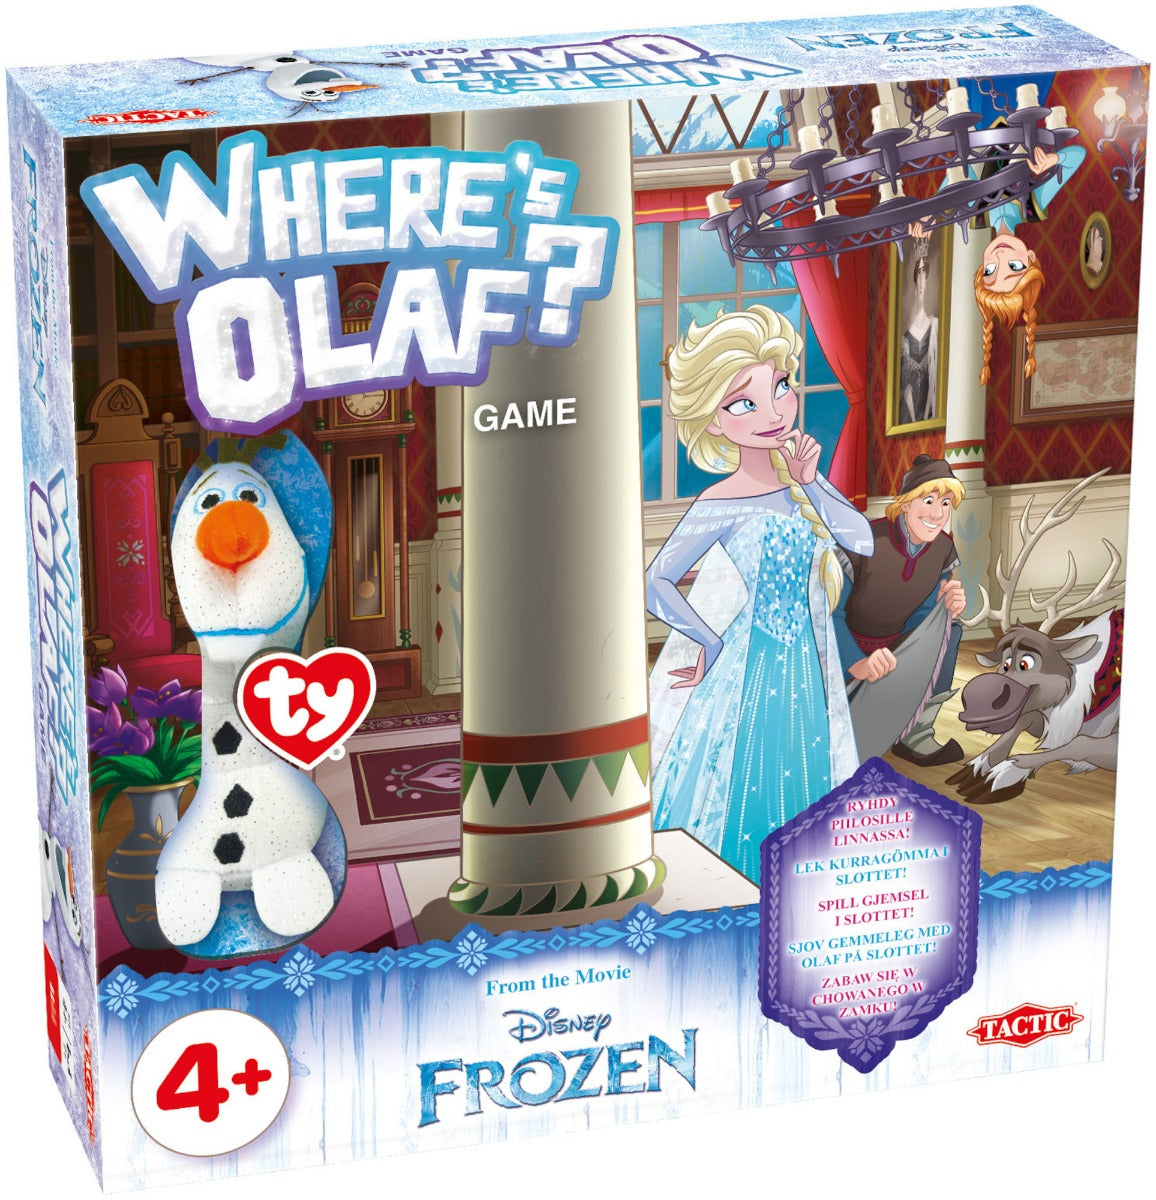 Frozen Wheres Olaf?